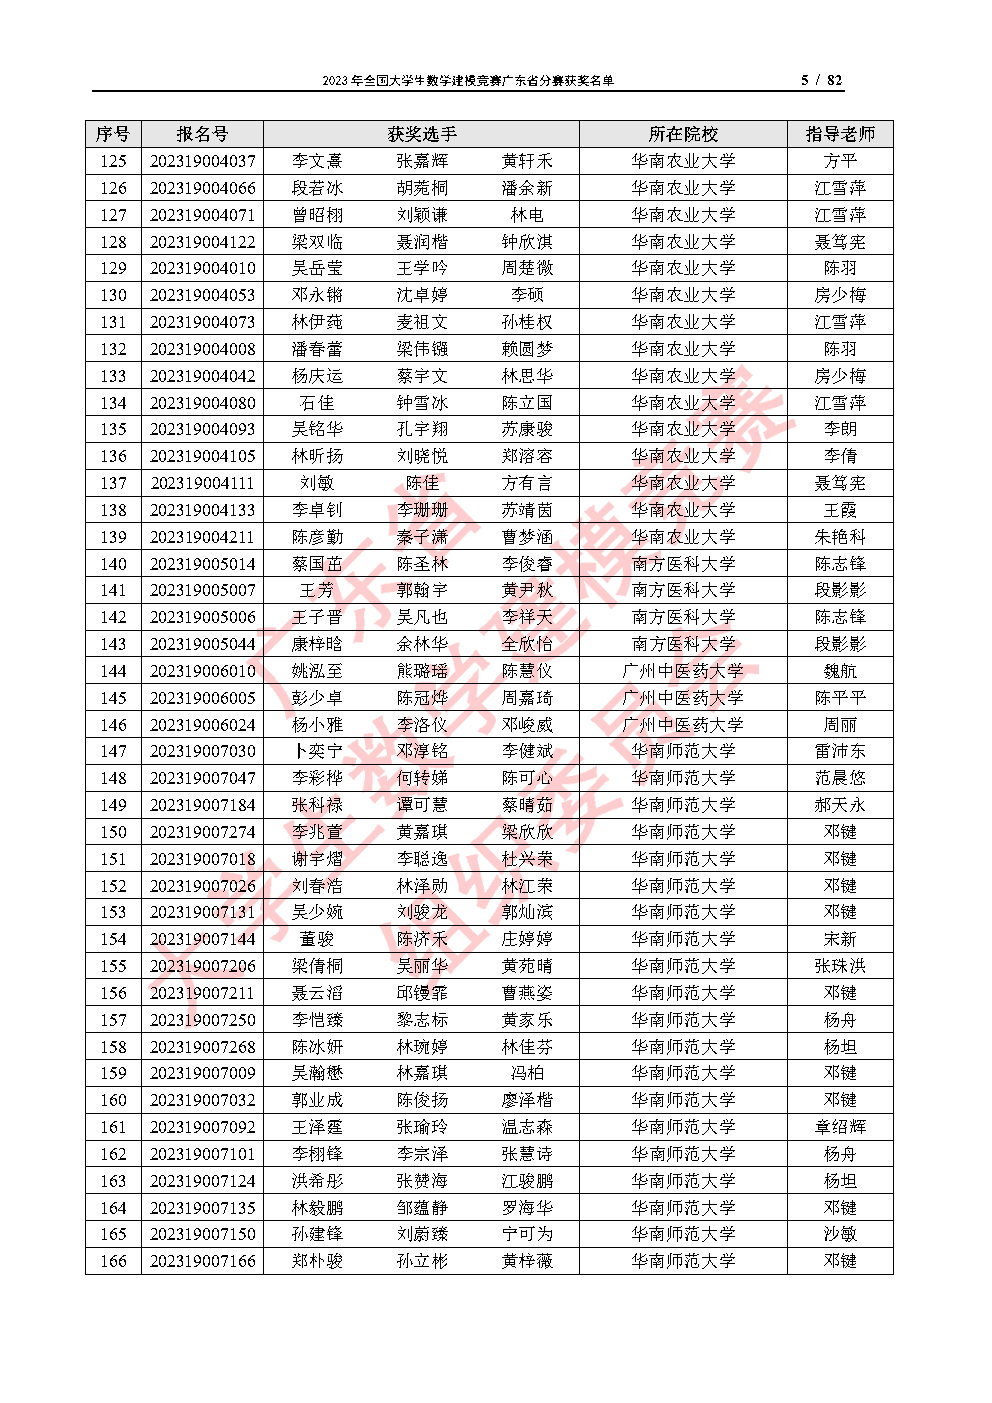 2023年全国大学生数学建模竞赛广东省分赛获奖名单_Page5.jpg